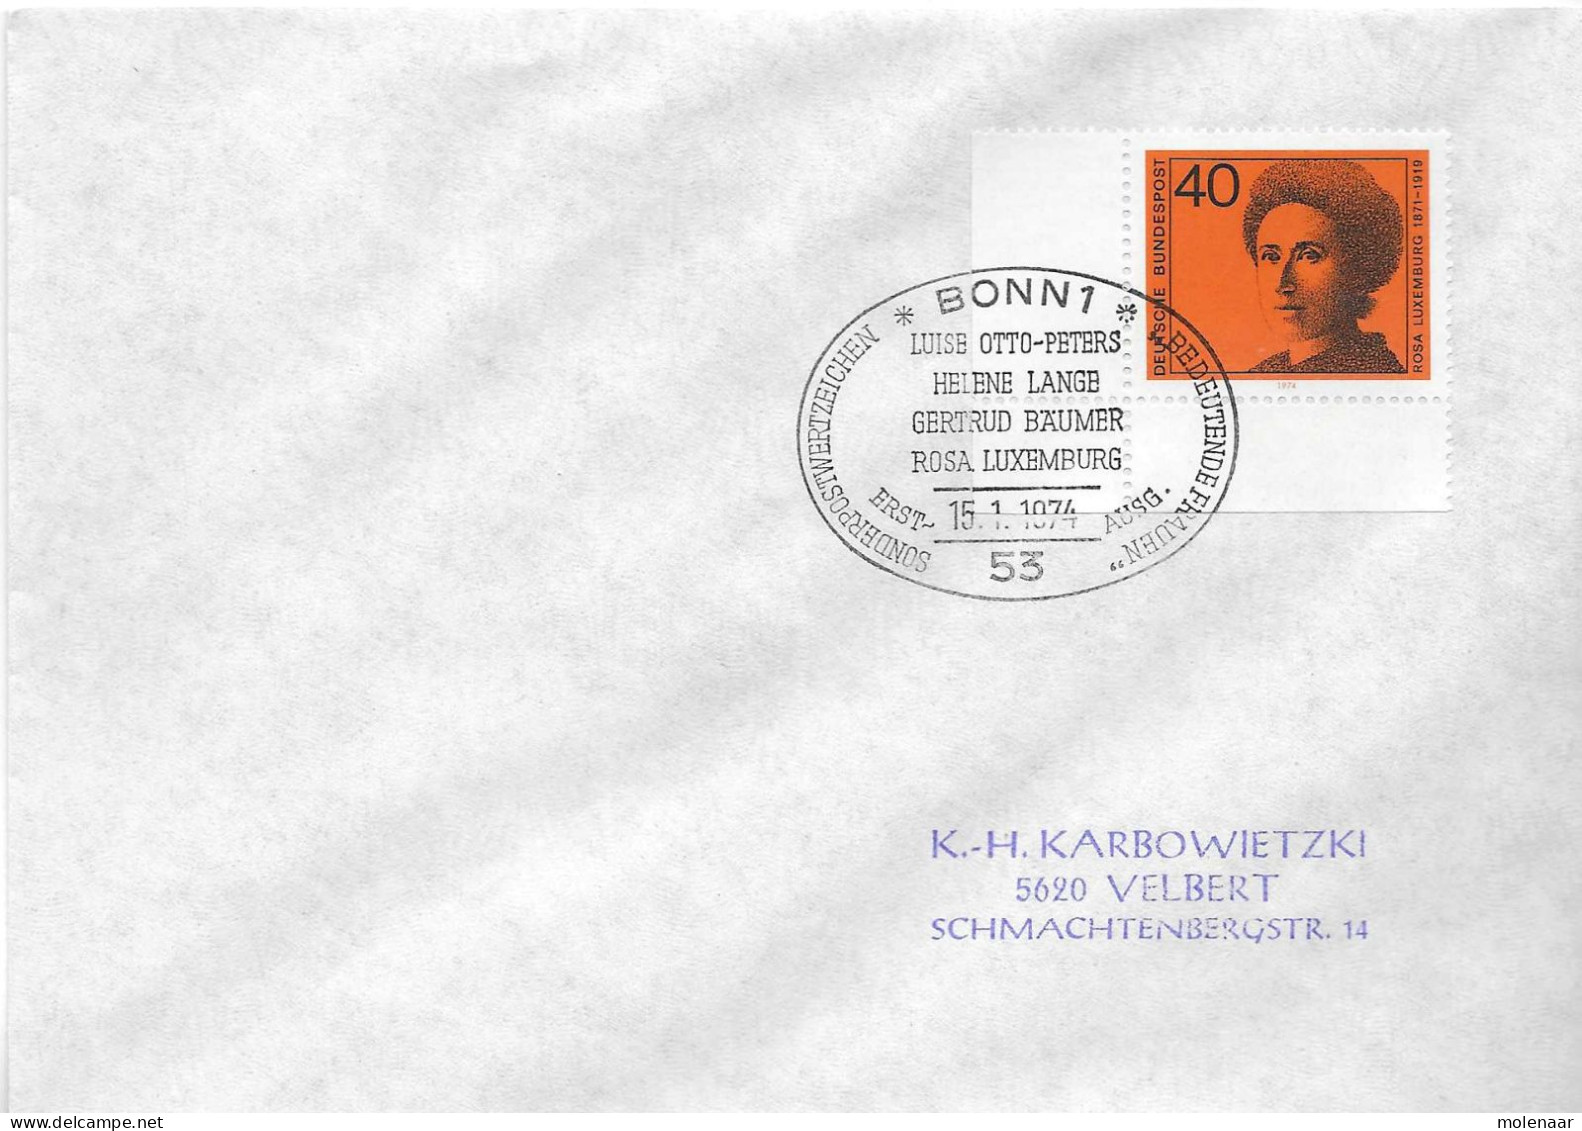 Postzegels > Europa > Duitsland > West-Duitsland > 1970-1979 > Brief Met No. 794 (17381) - Briefe U. Dokumente